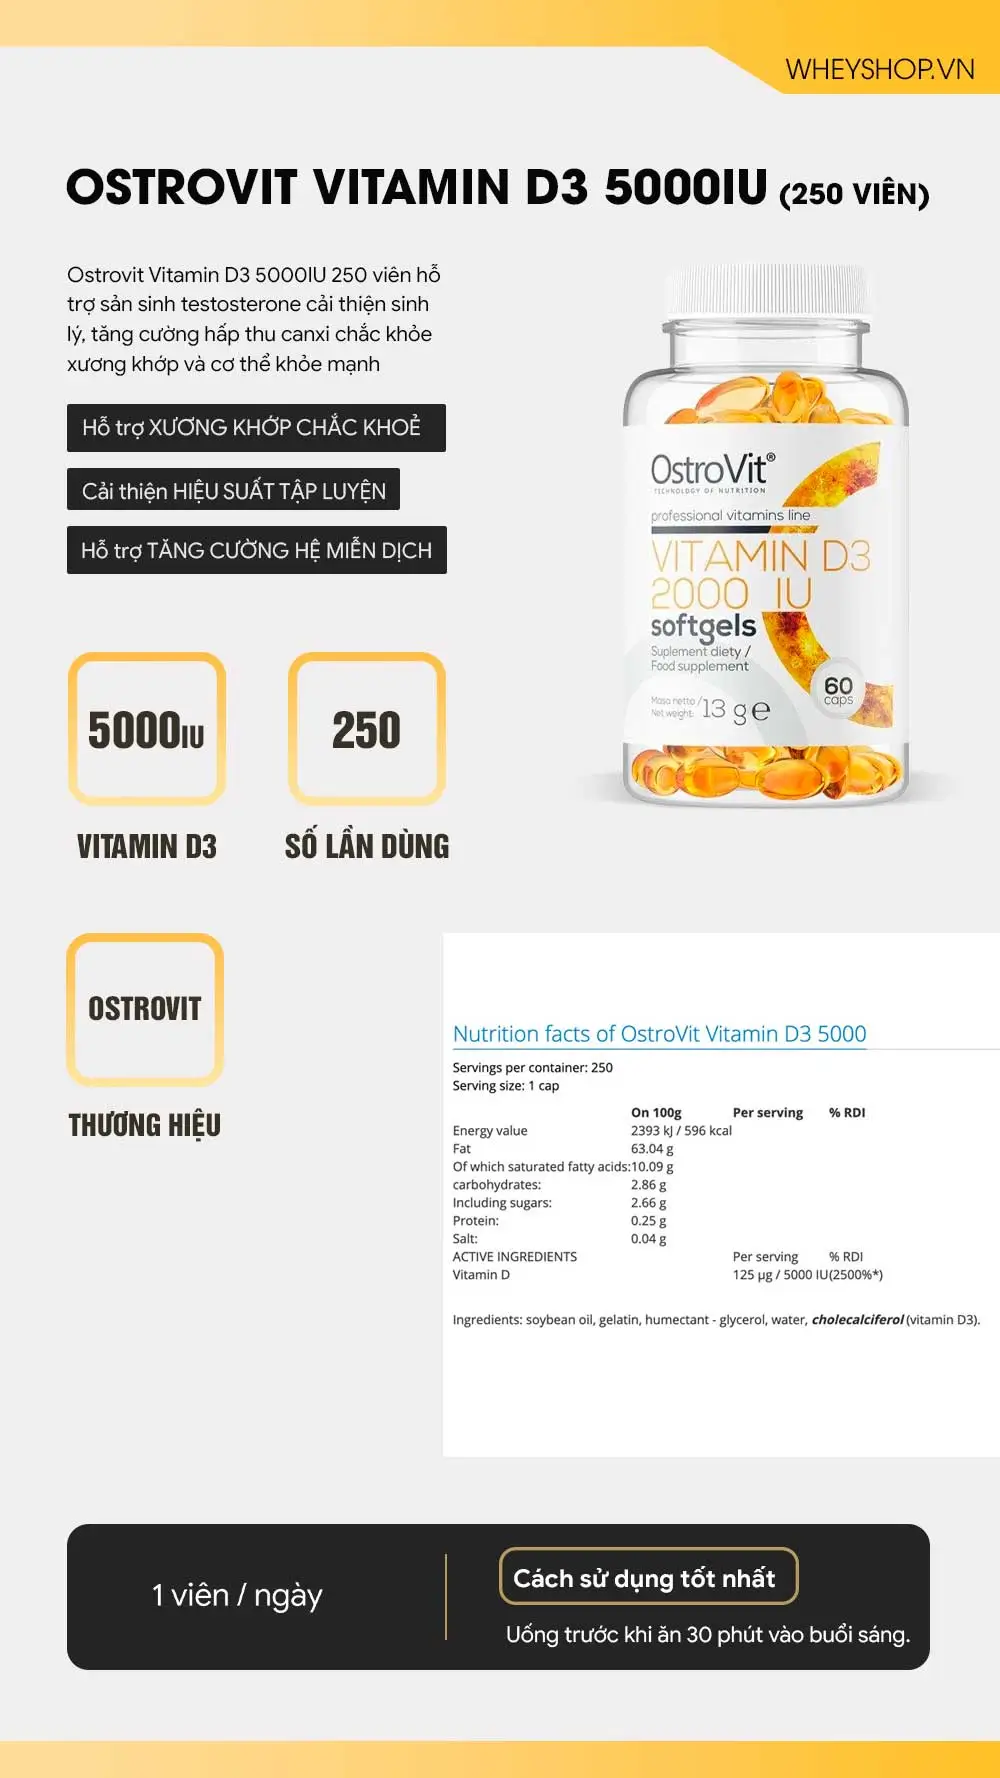 ostrovit-vitamin-d3-5000iu-250-vien(1)